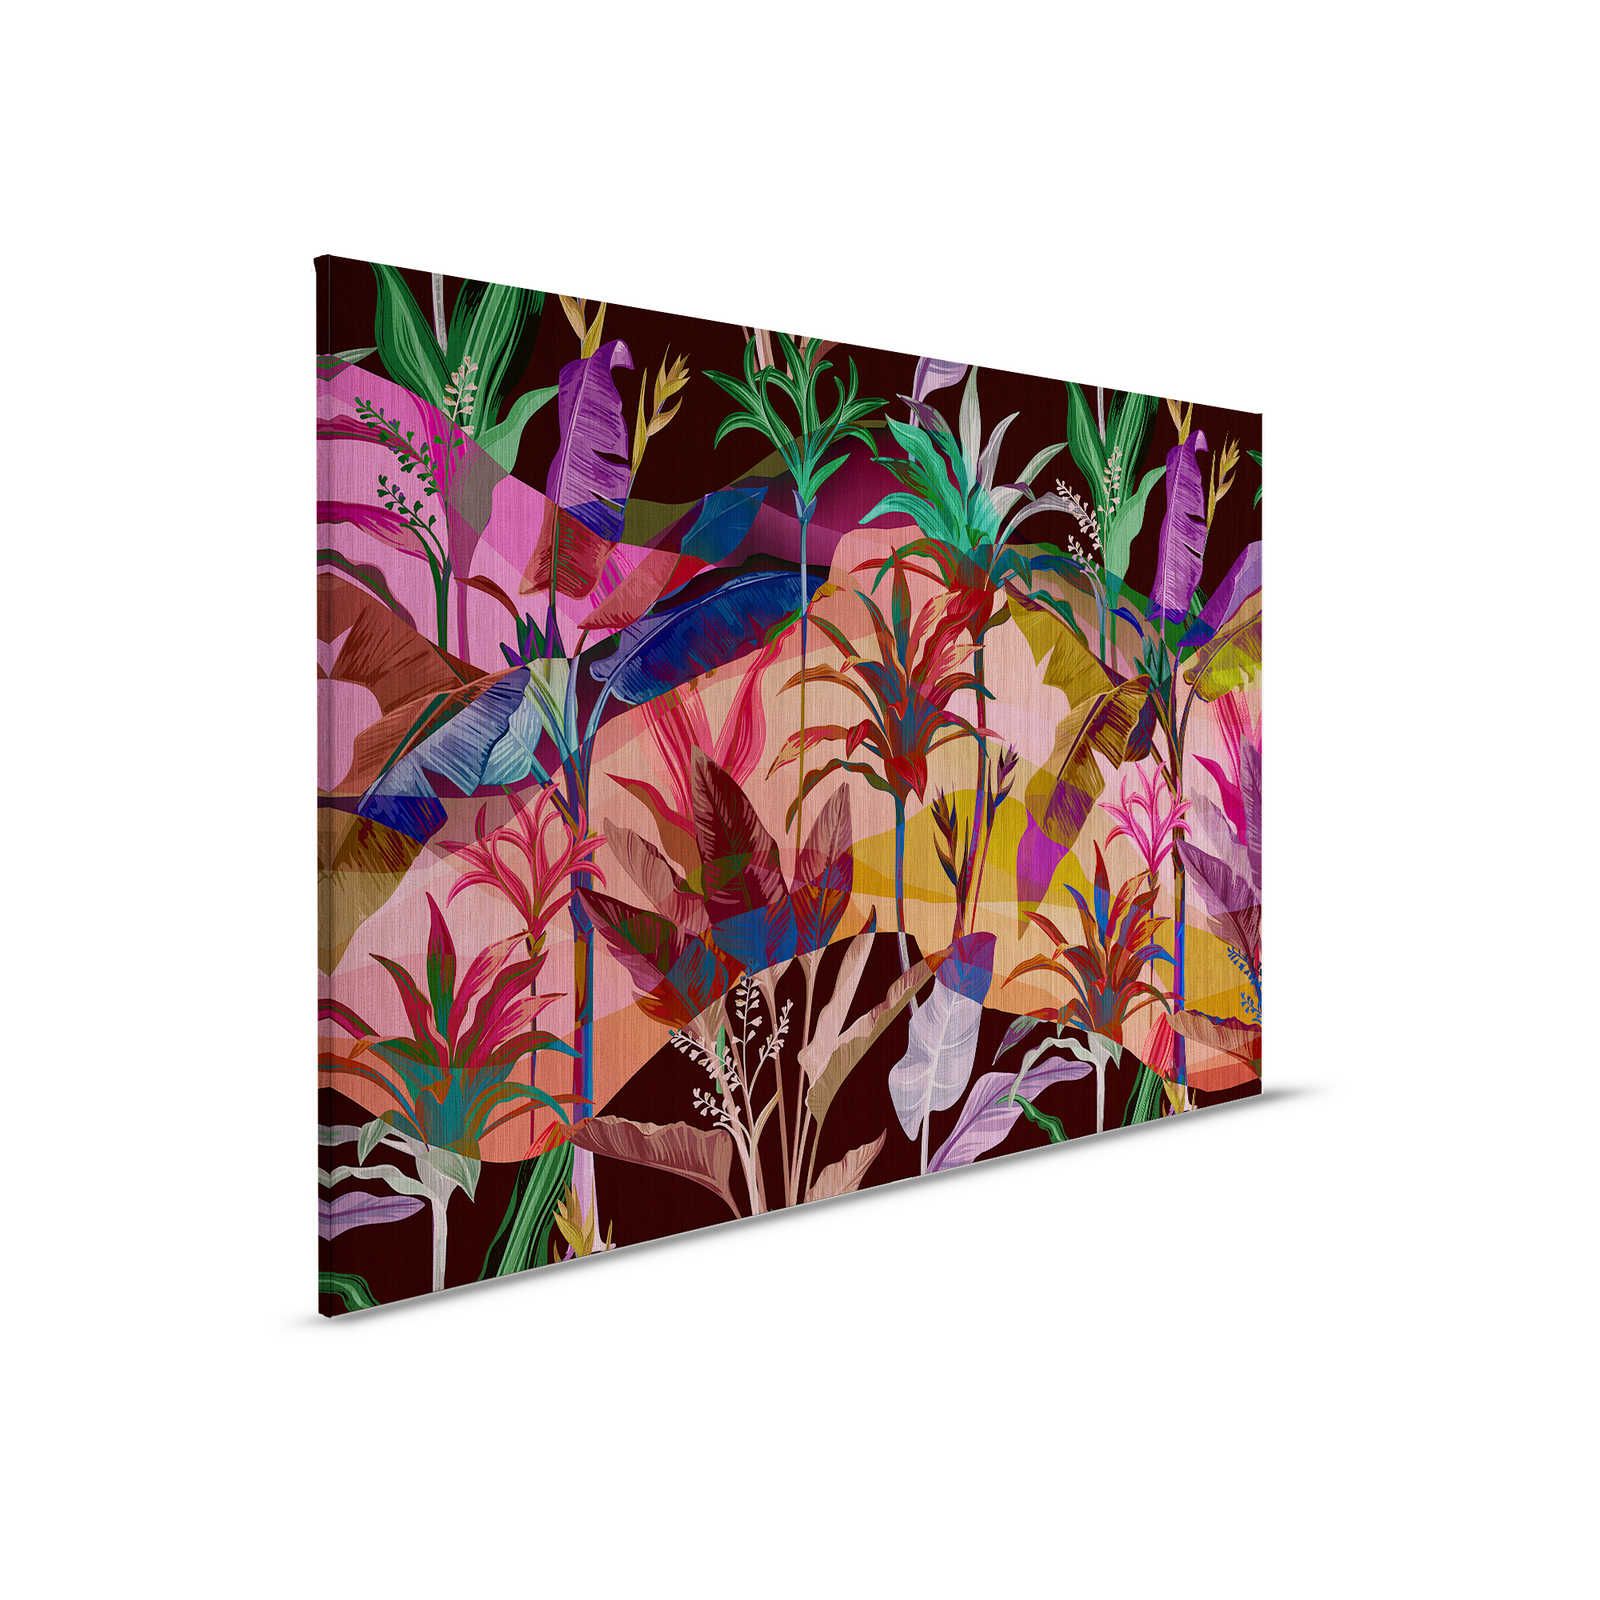 Palmyra 1 - Jungle canvas schilderij kleurrijke & abstracte bladeren - 0,90 m x 0,60 m
